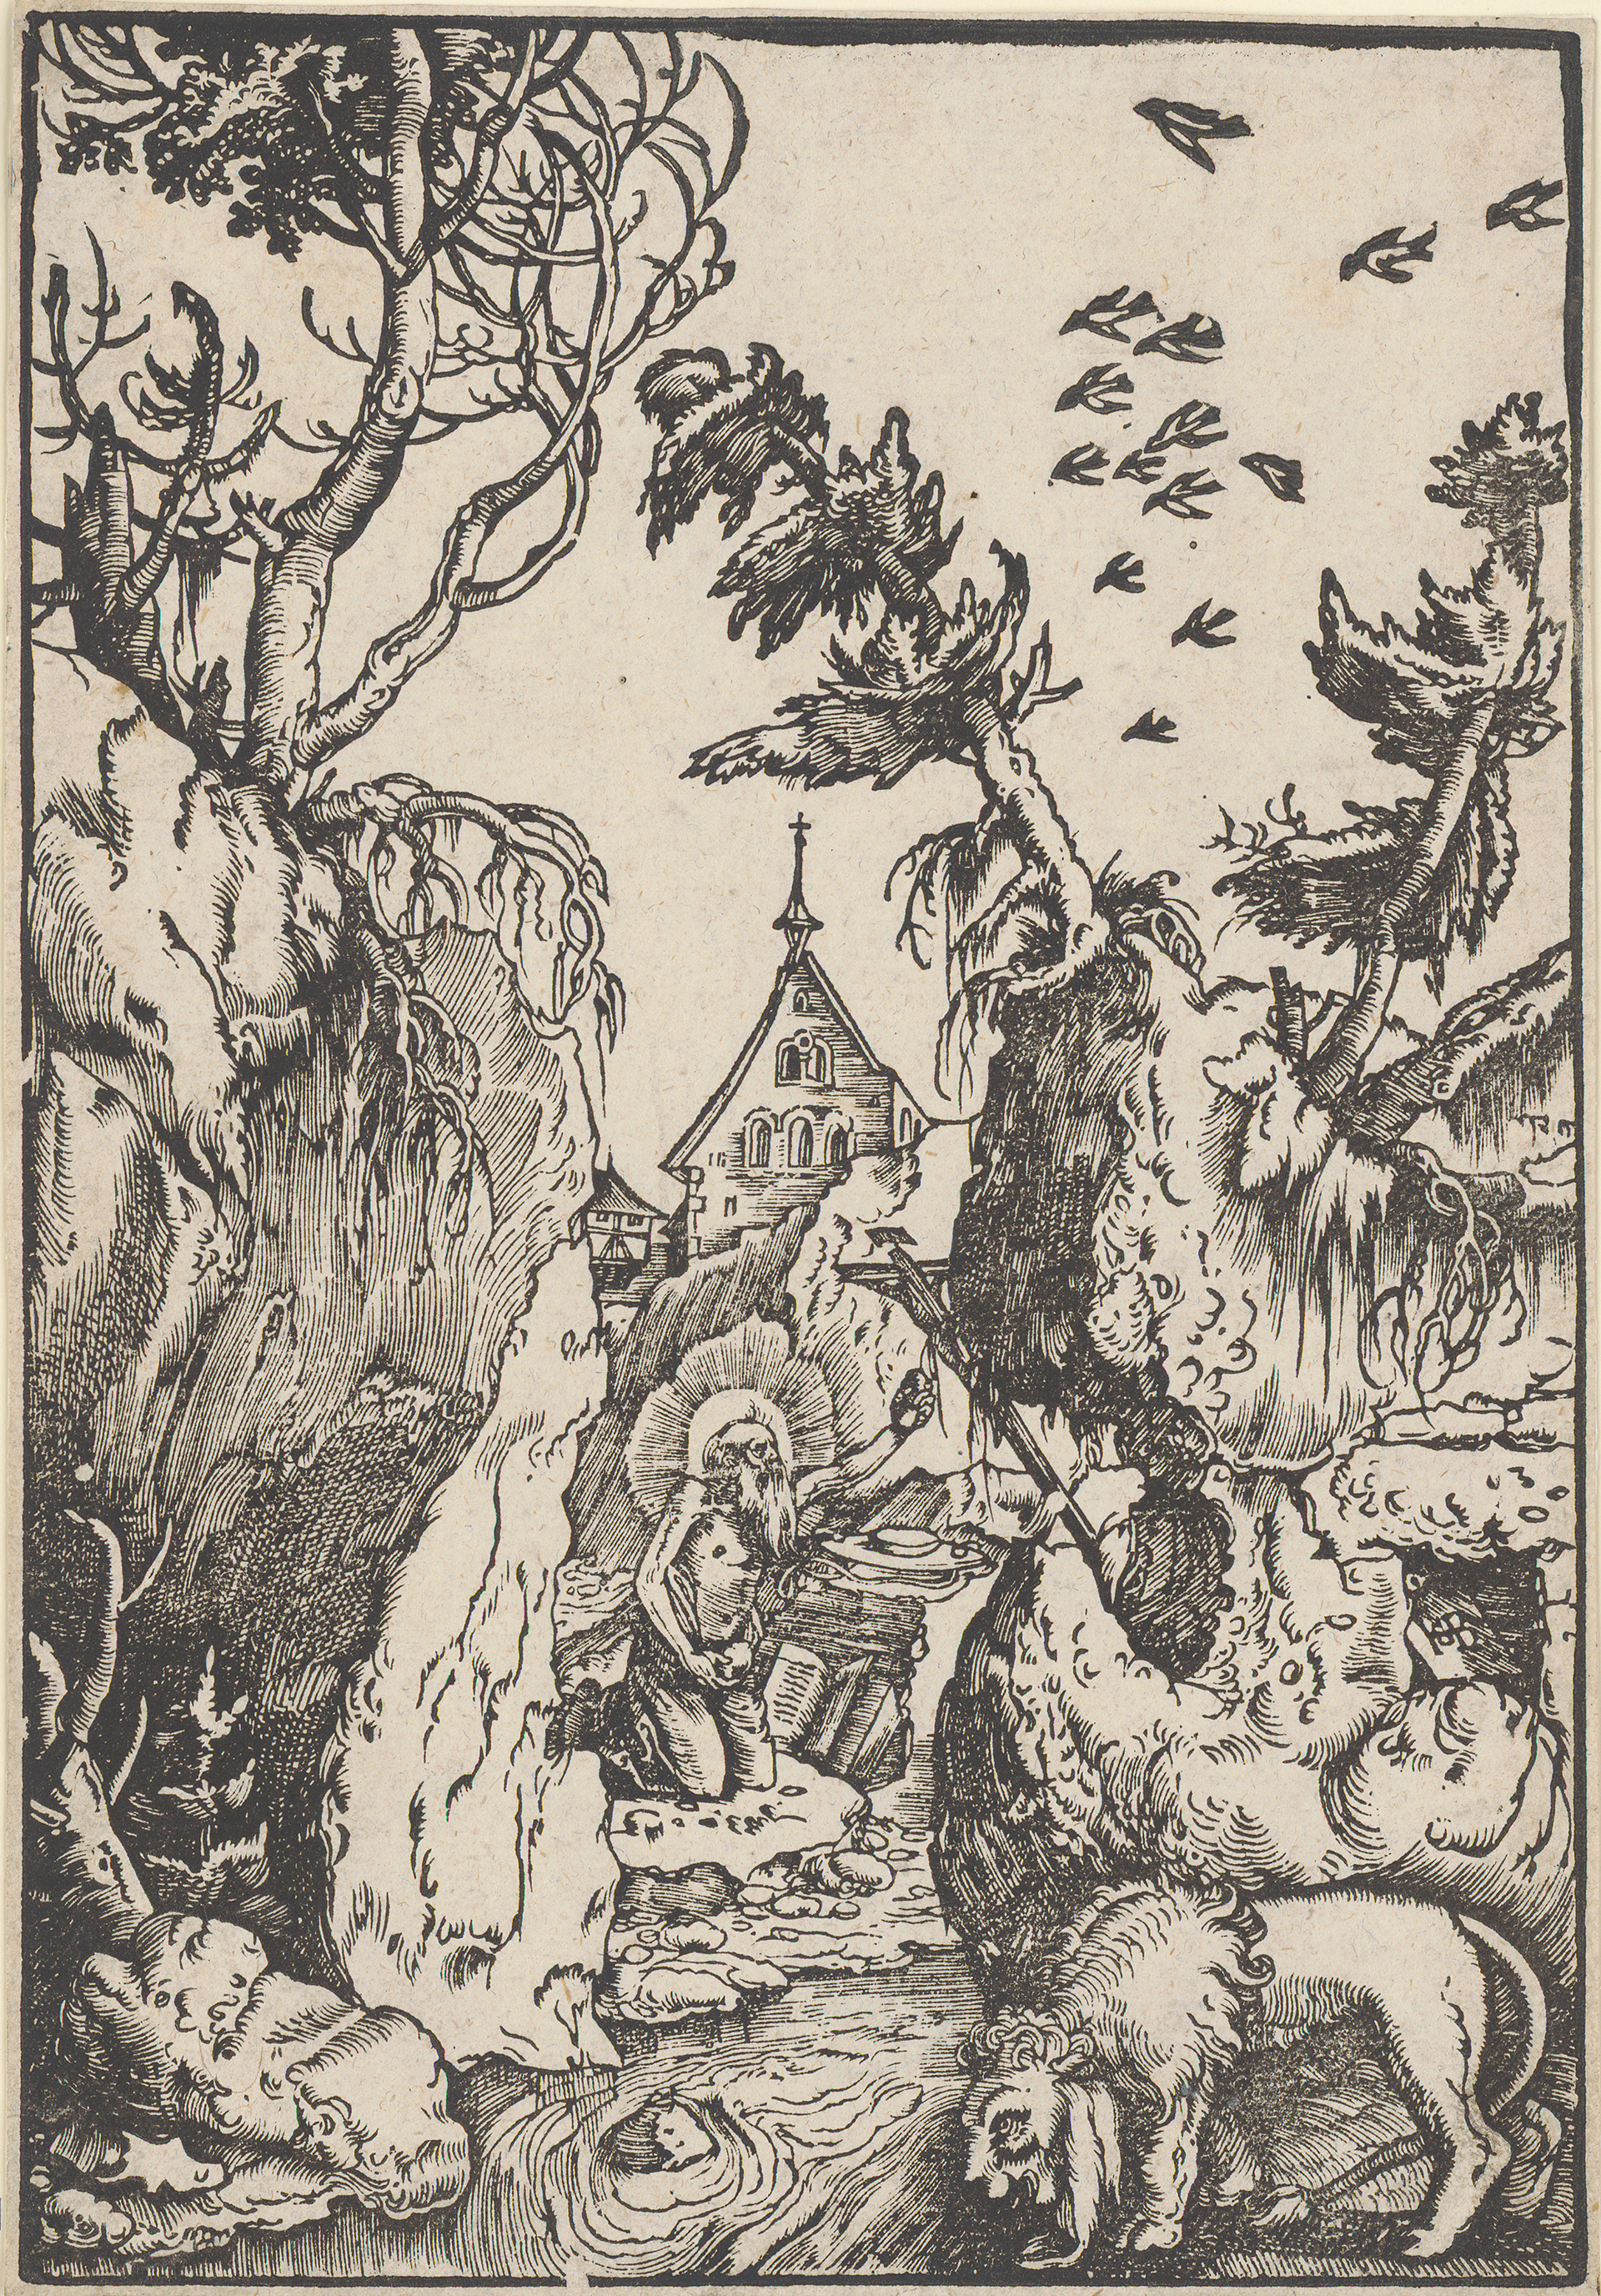 Abbildung des Werks "Der heilige Hieronymus als Büßer in einer Schlucht" von Hans Baldung Grien, entstanden um 1511. Ein knieender Mann ist umgeben von Felsen und Tieren.